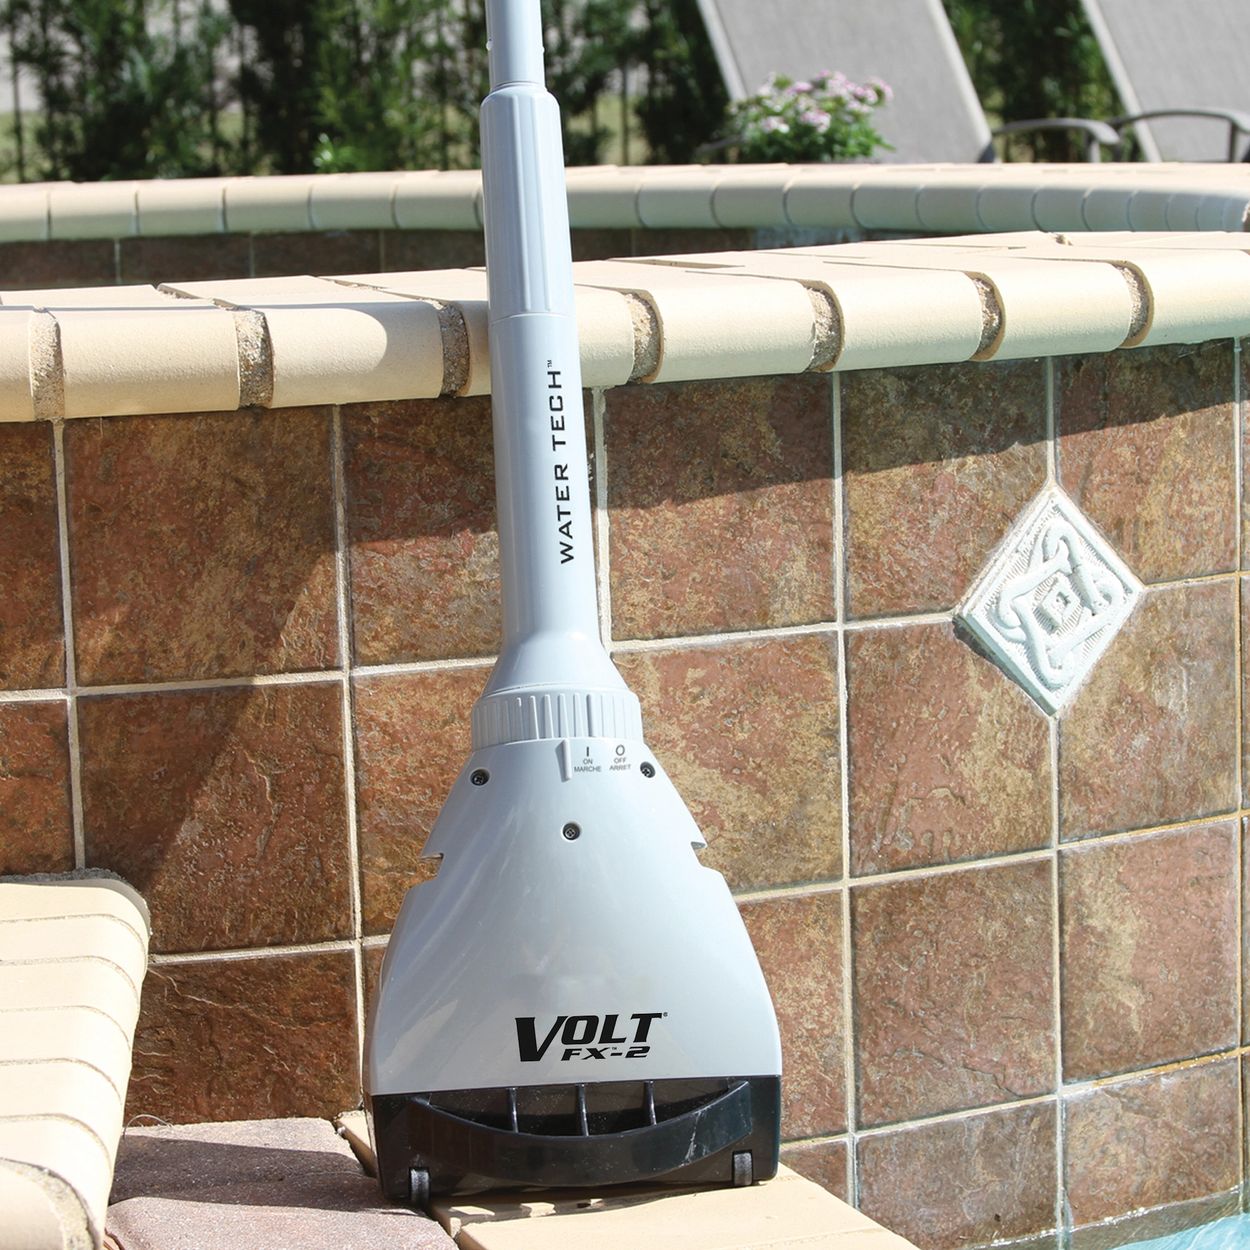 Water TechTM Volt® FXTM-2
30% larger vacuum head compared to the current Aqua Broom® model.

